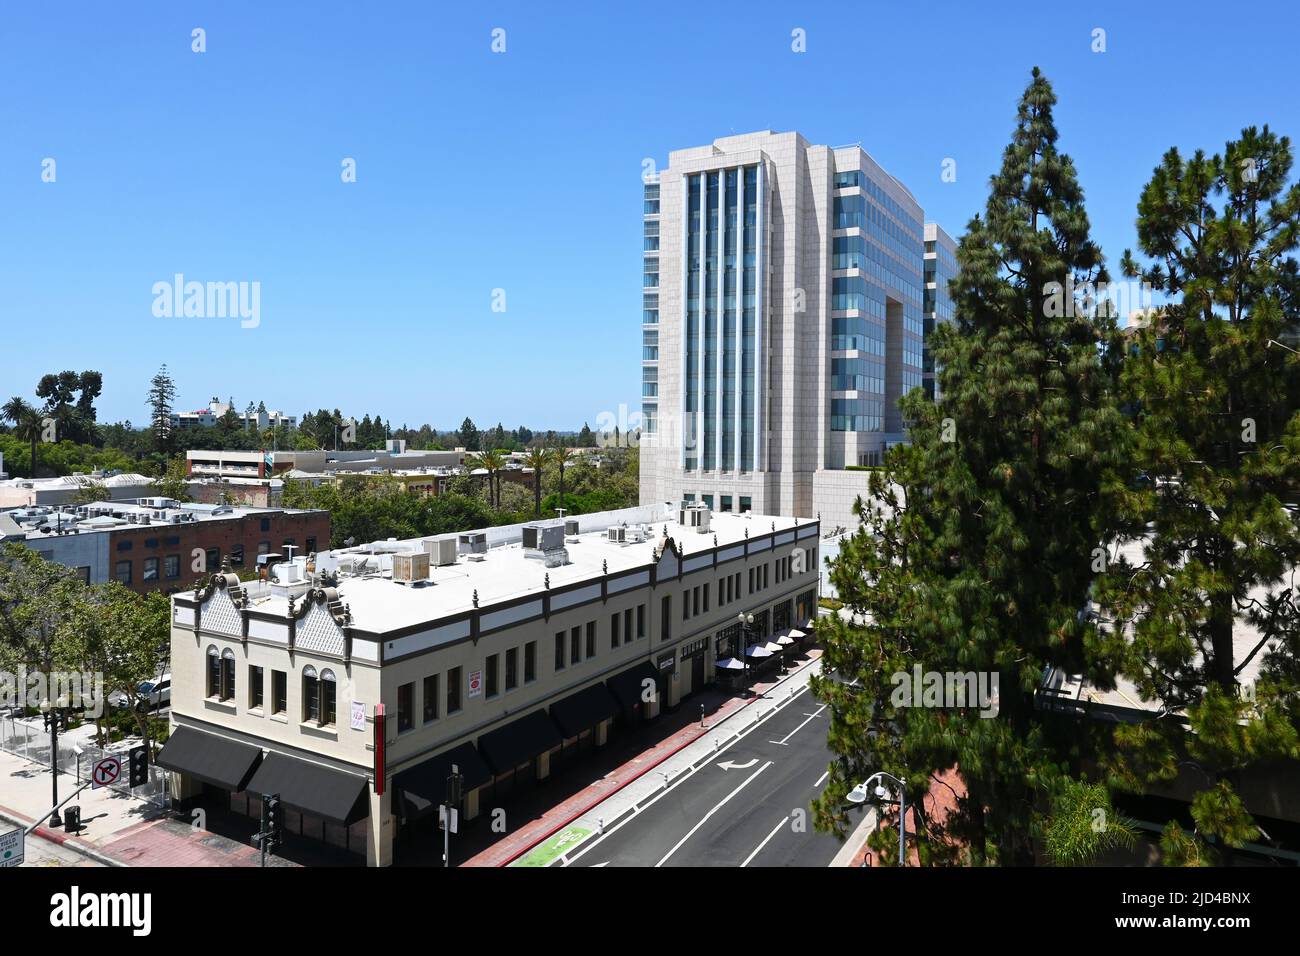 SANTA ANA, KALIFORNIEN - 17 JUN 2022: Das historische Knights of Pythias Building mit dem Ronald Reagan Federal Courthouse aus einem hohen Winkel Stockfoto